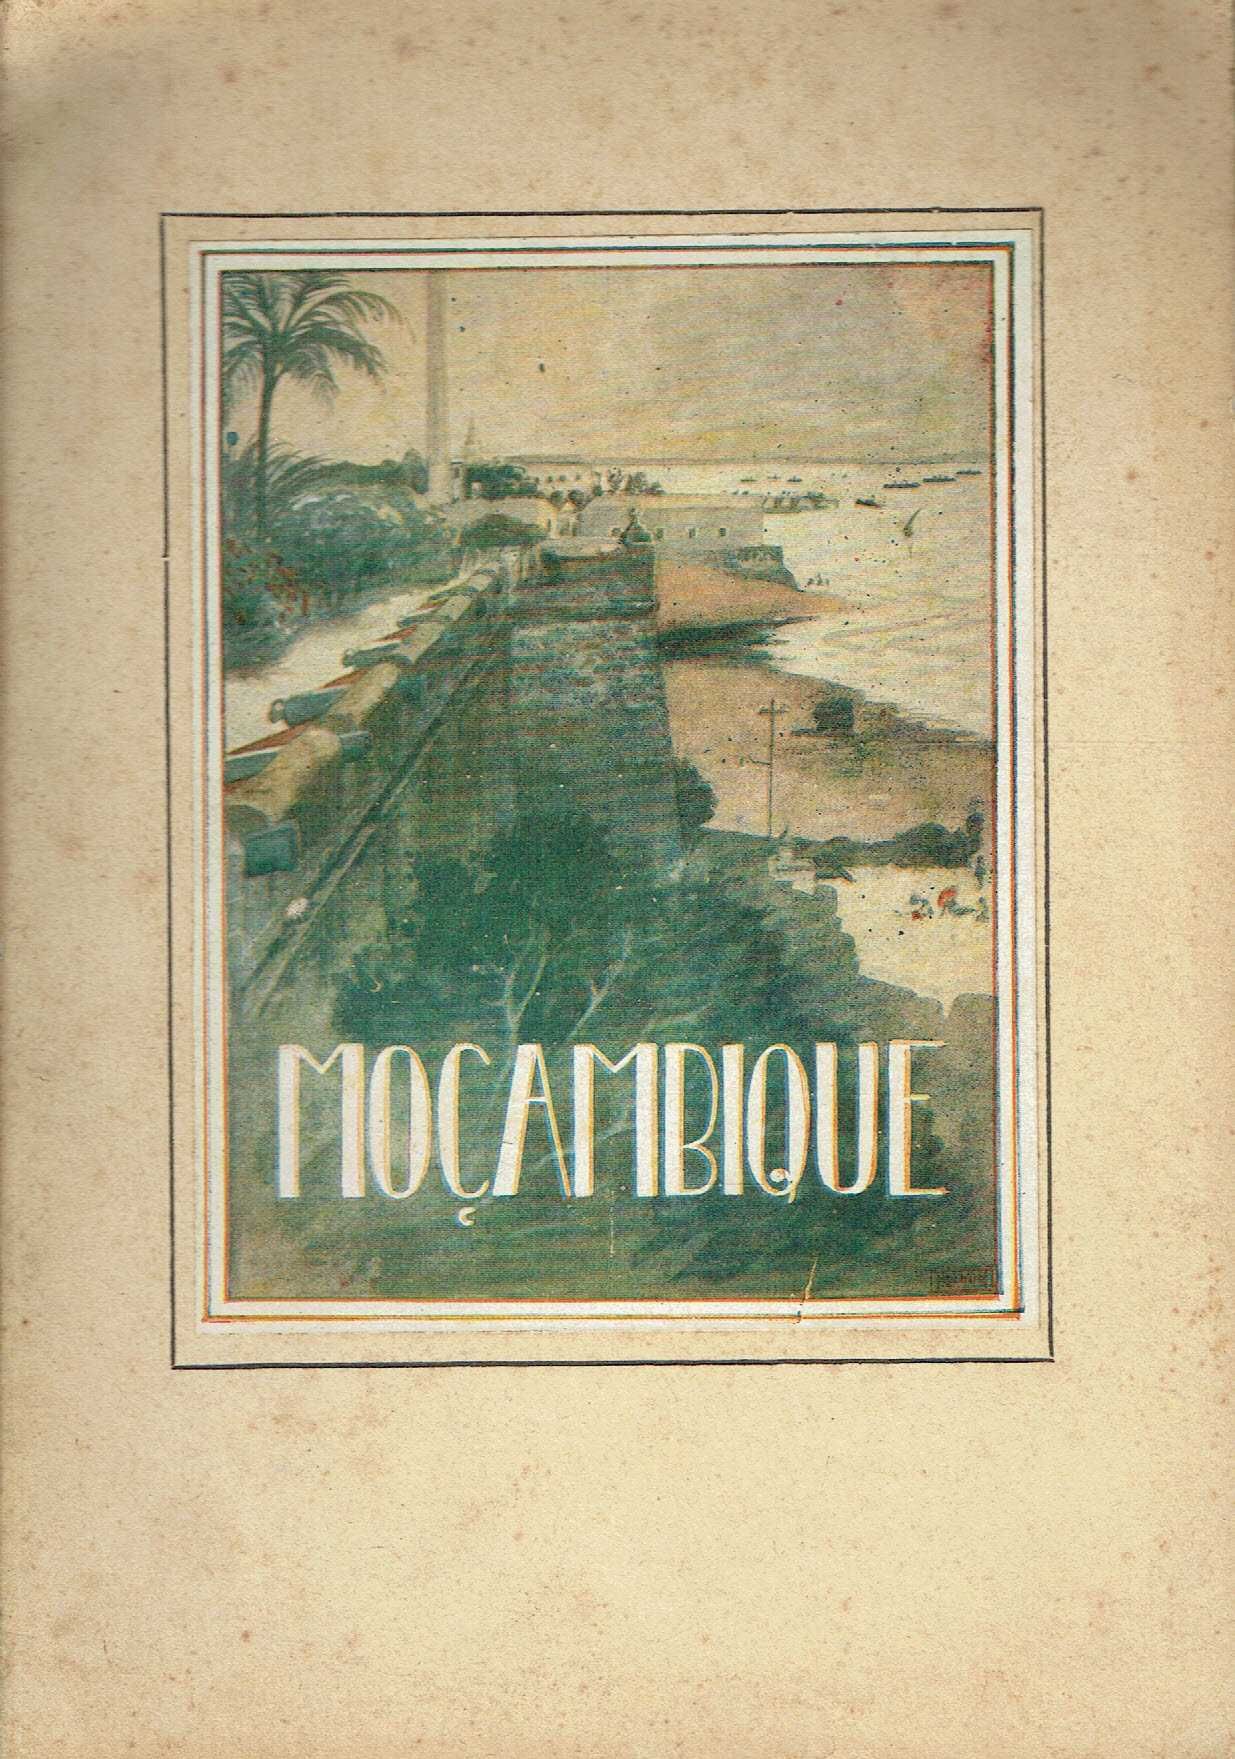 92

Mozambique

Exposição Colonial Portuguesa -Antuérpia 1930